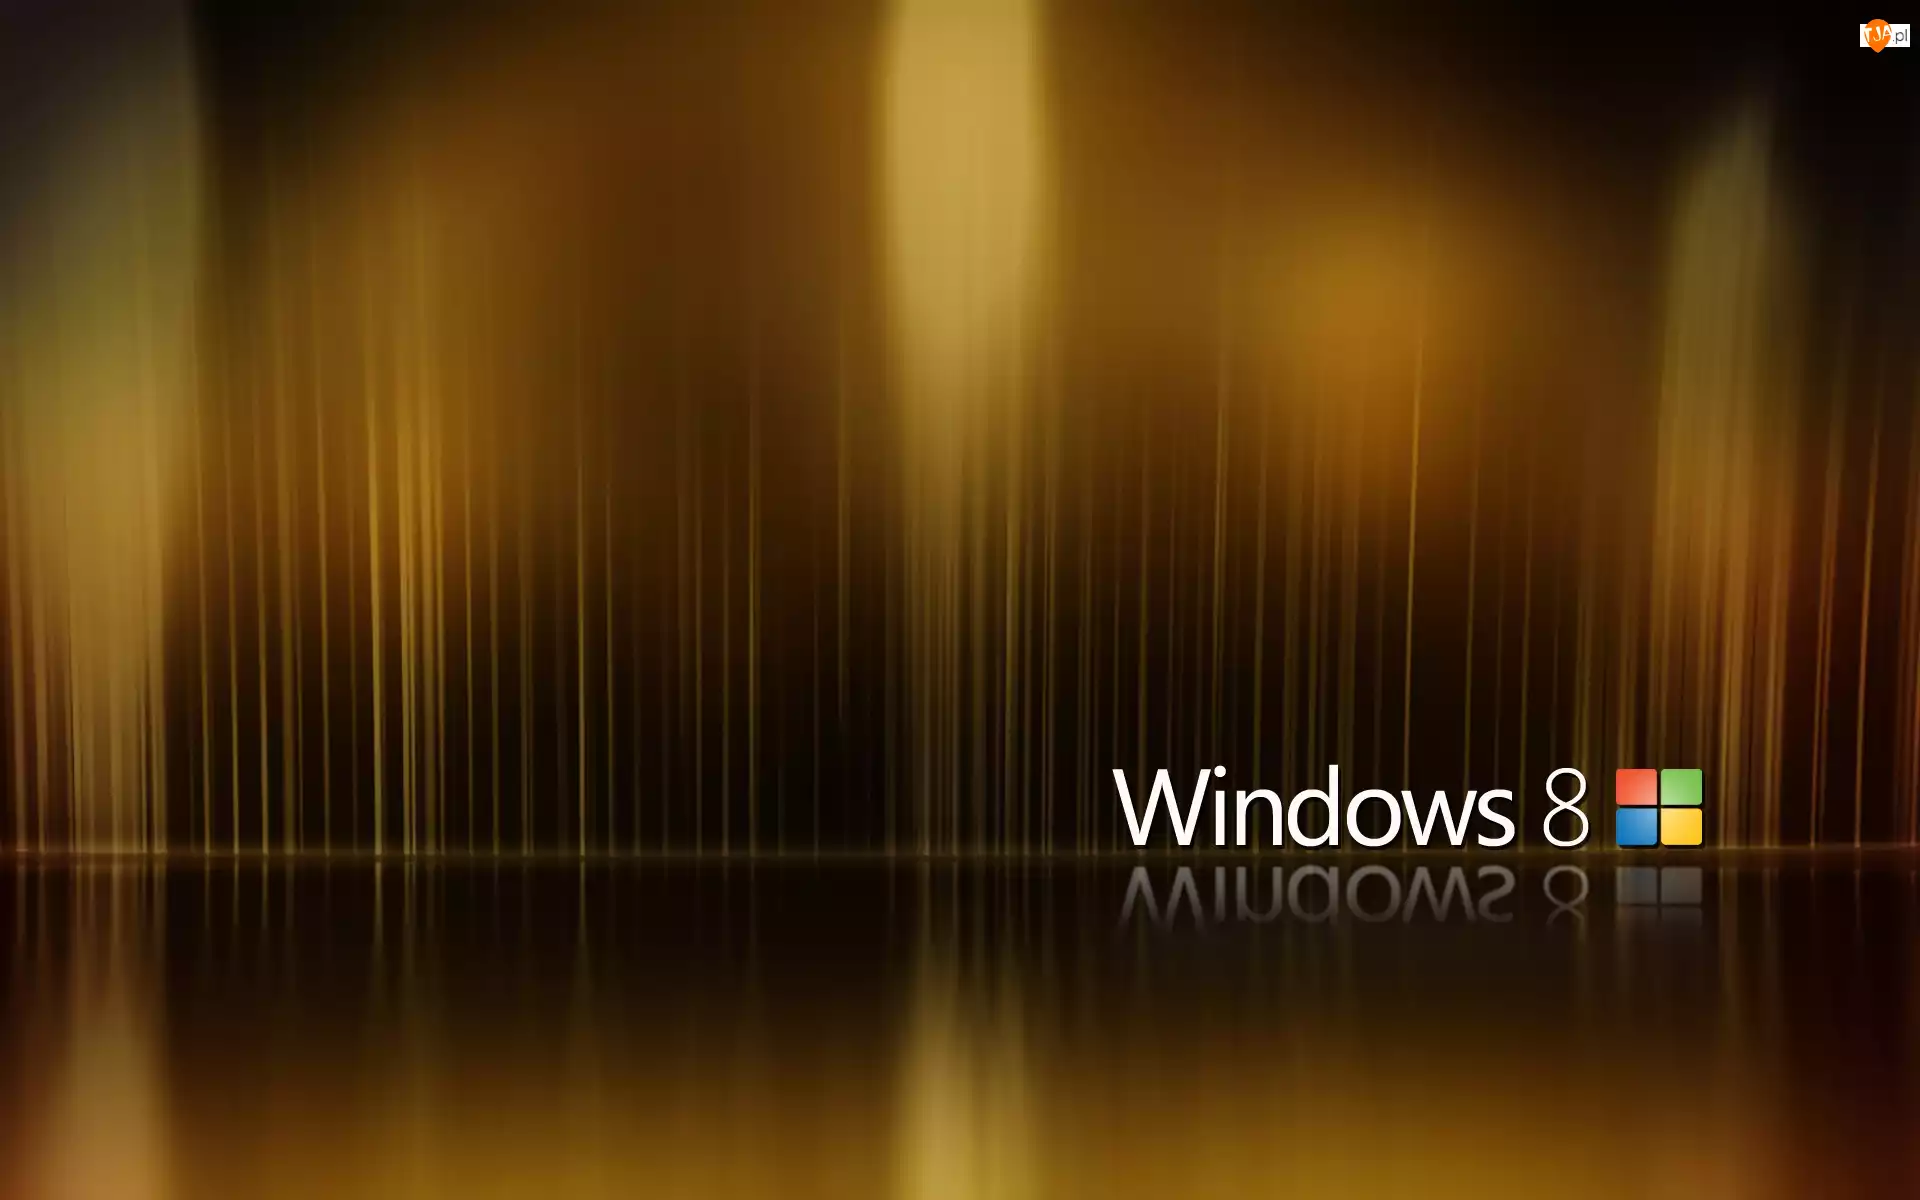 Windows 8, Grafika, System, Operacyjny